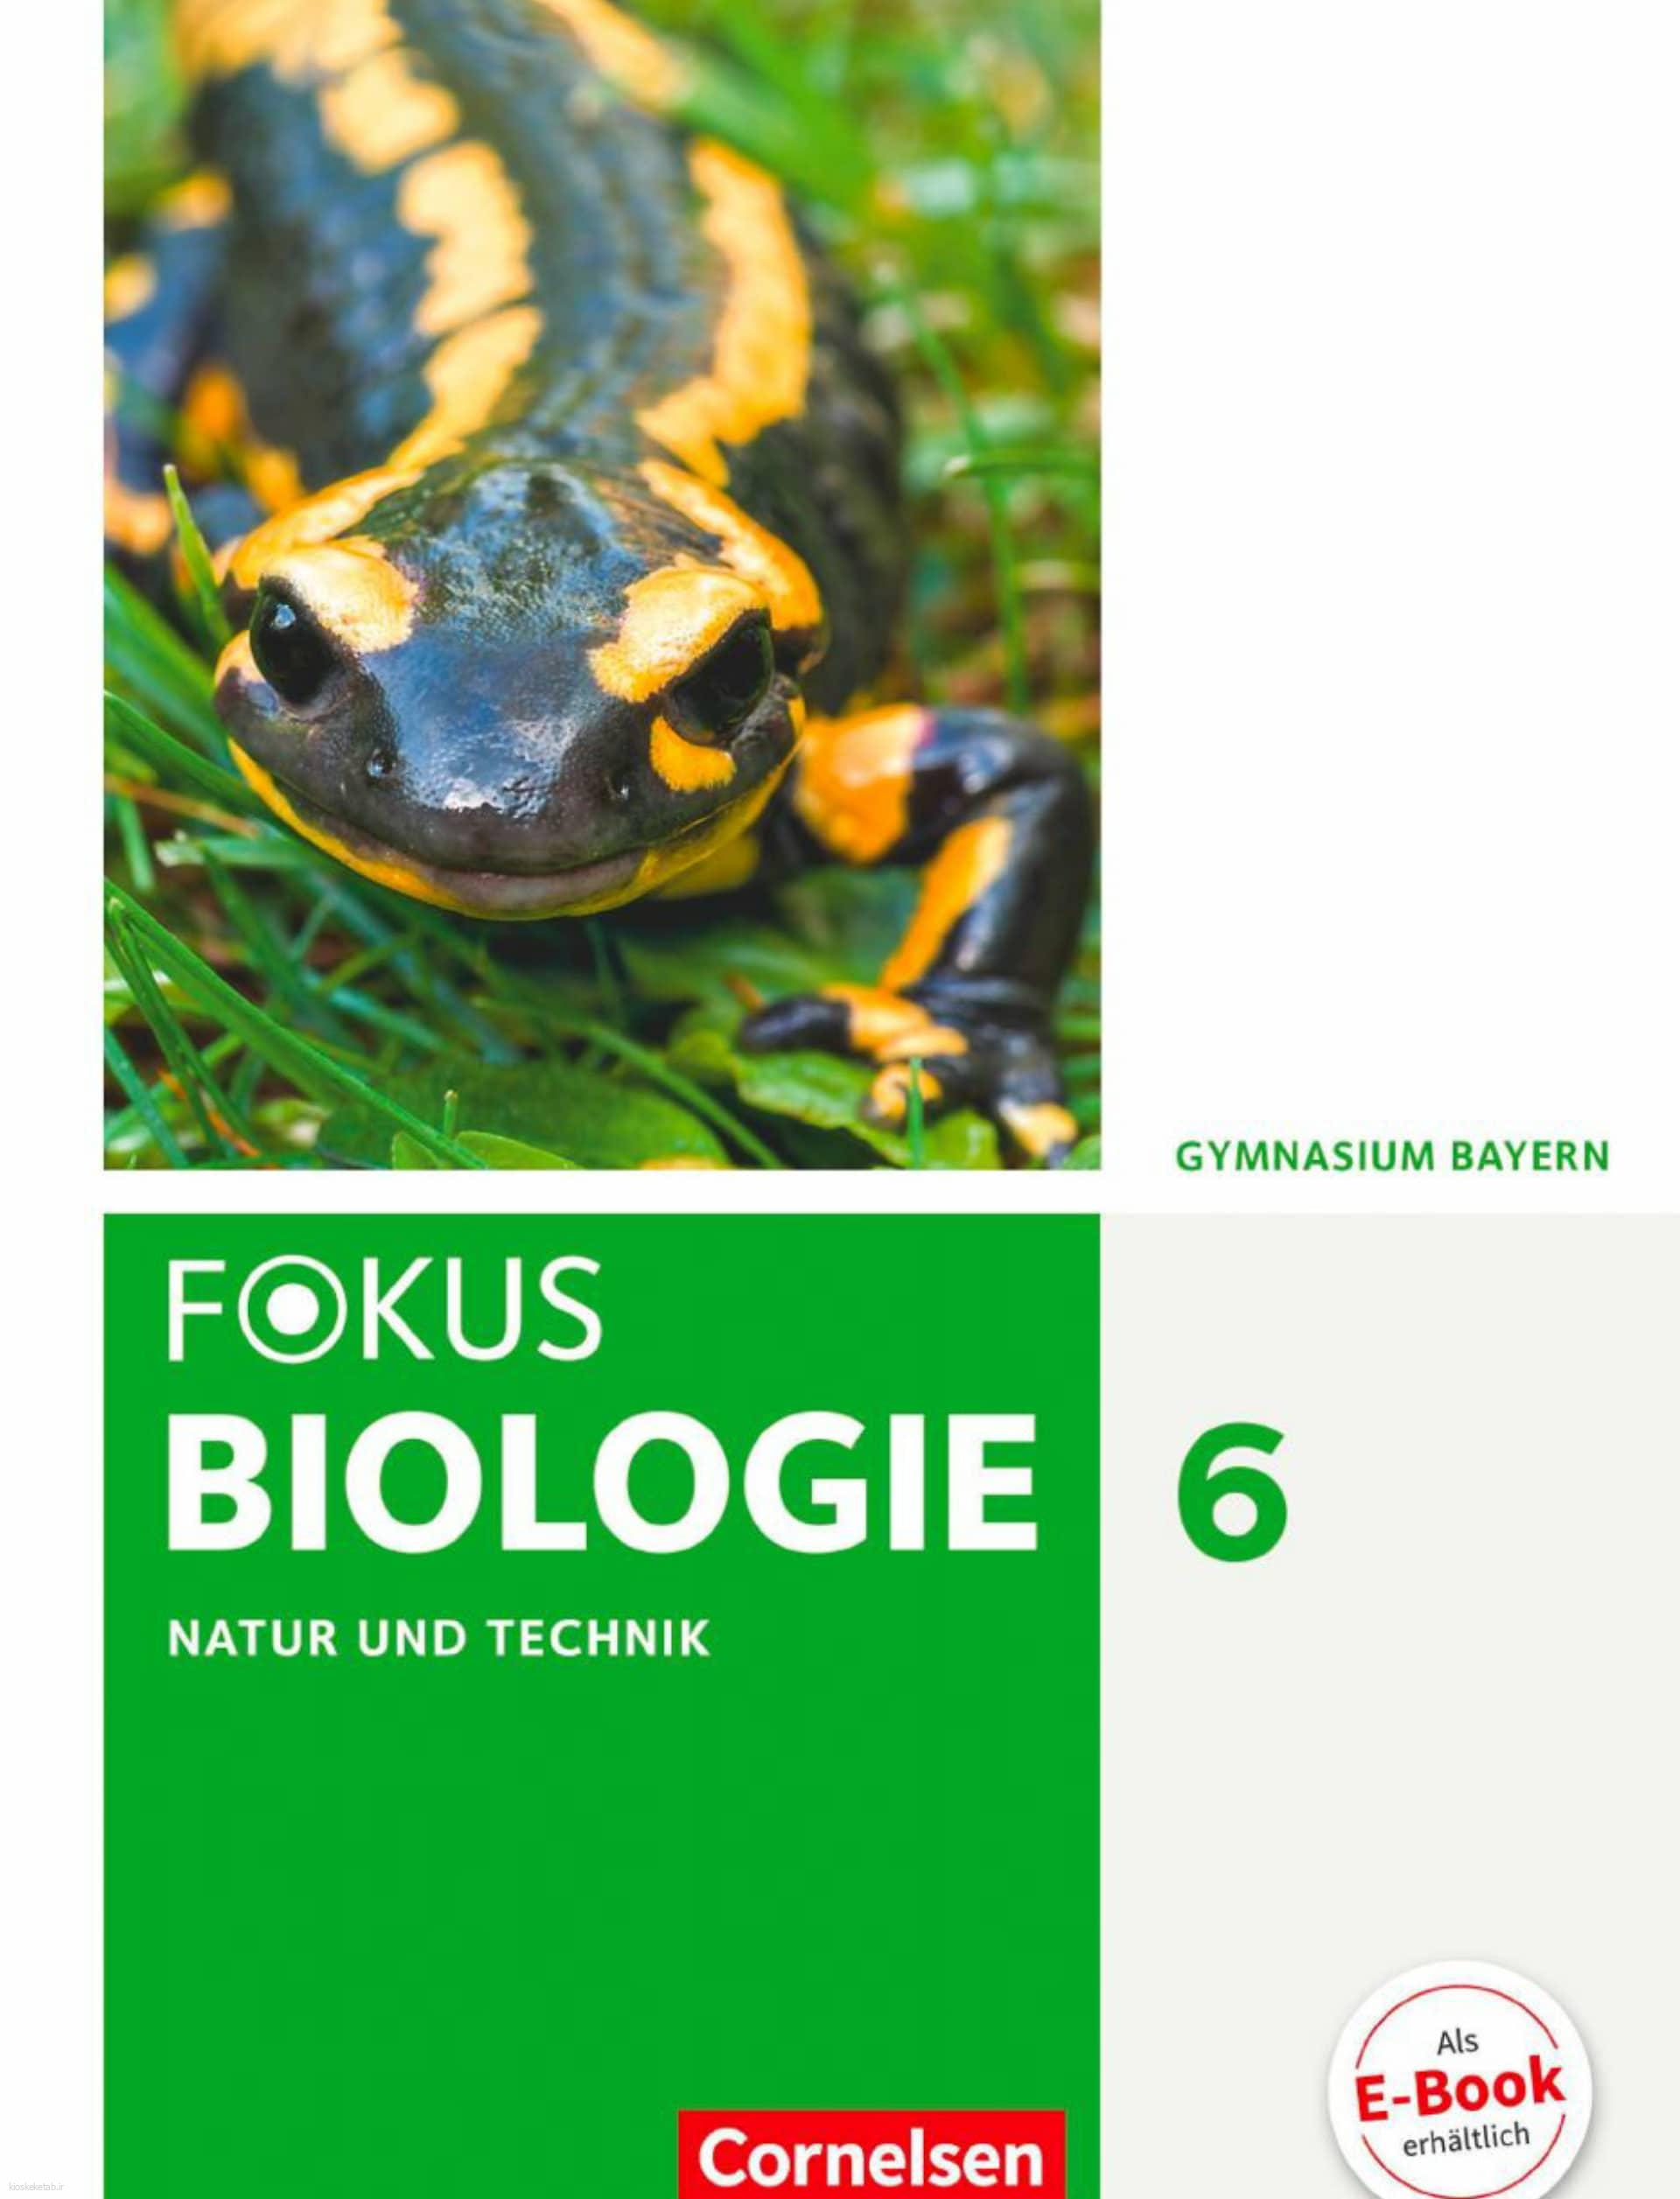 دانلود کتاب آلمانیfokus biologie 6